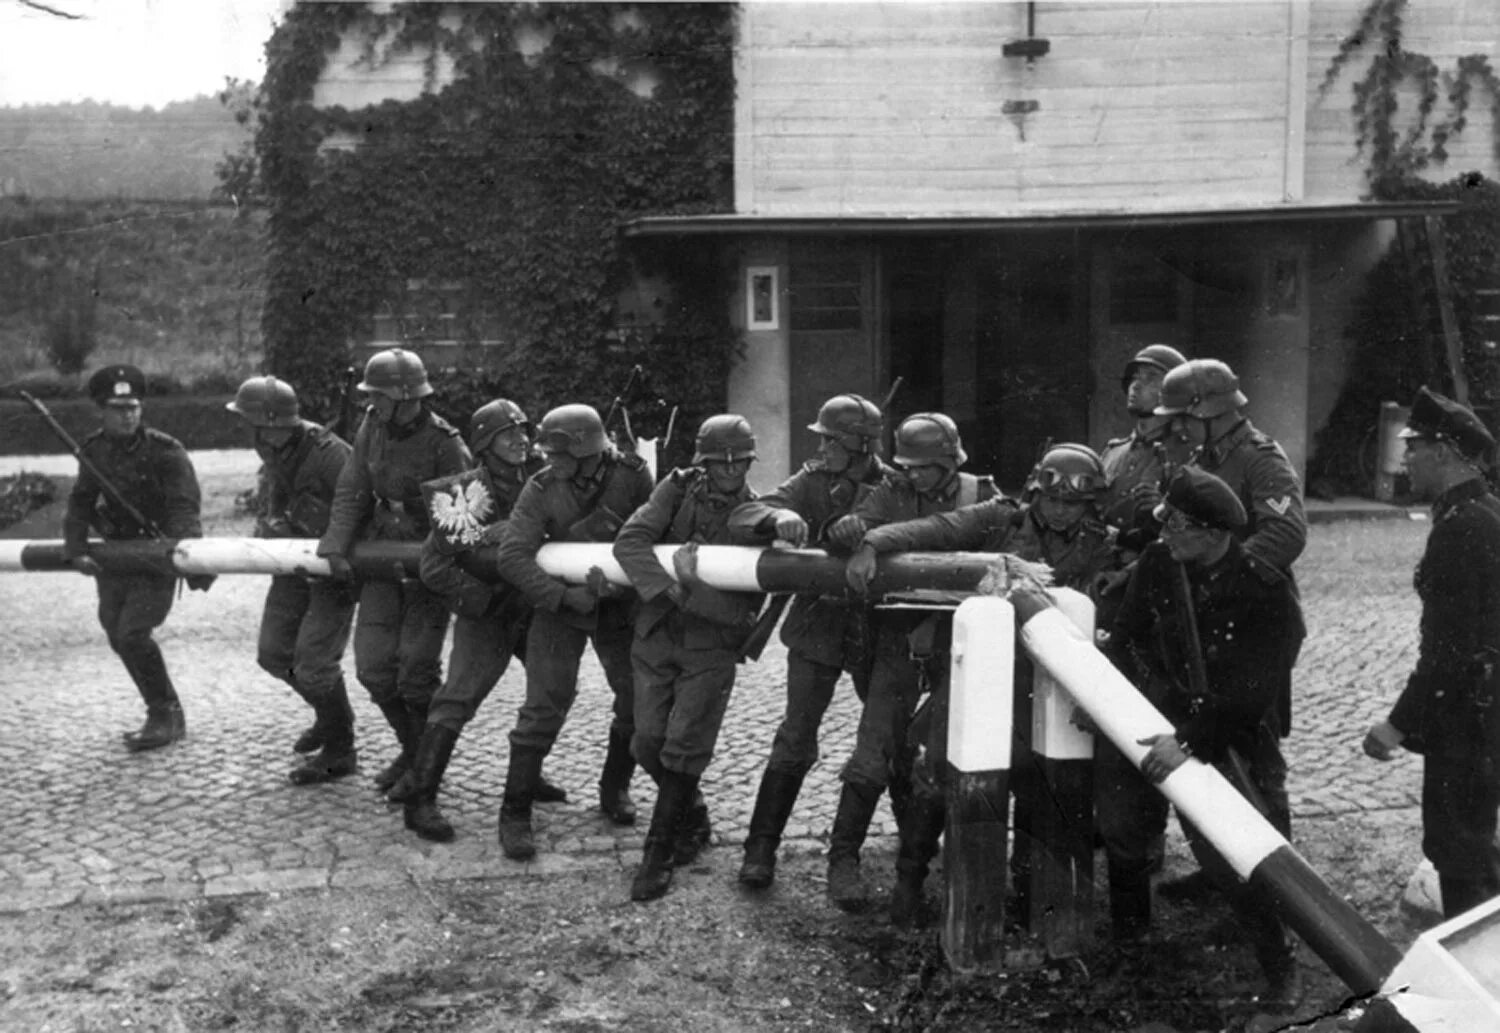 1.9.1939 Германские войска напали на Польшу. Вторжение в Польшу 1939 Германия. Немецкие солдаты Польша ш лагбаун. 1939 год 2 сентября